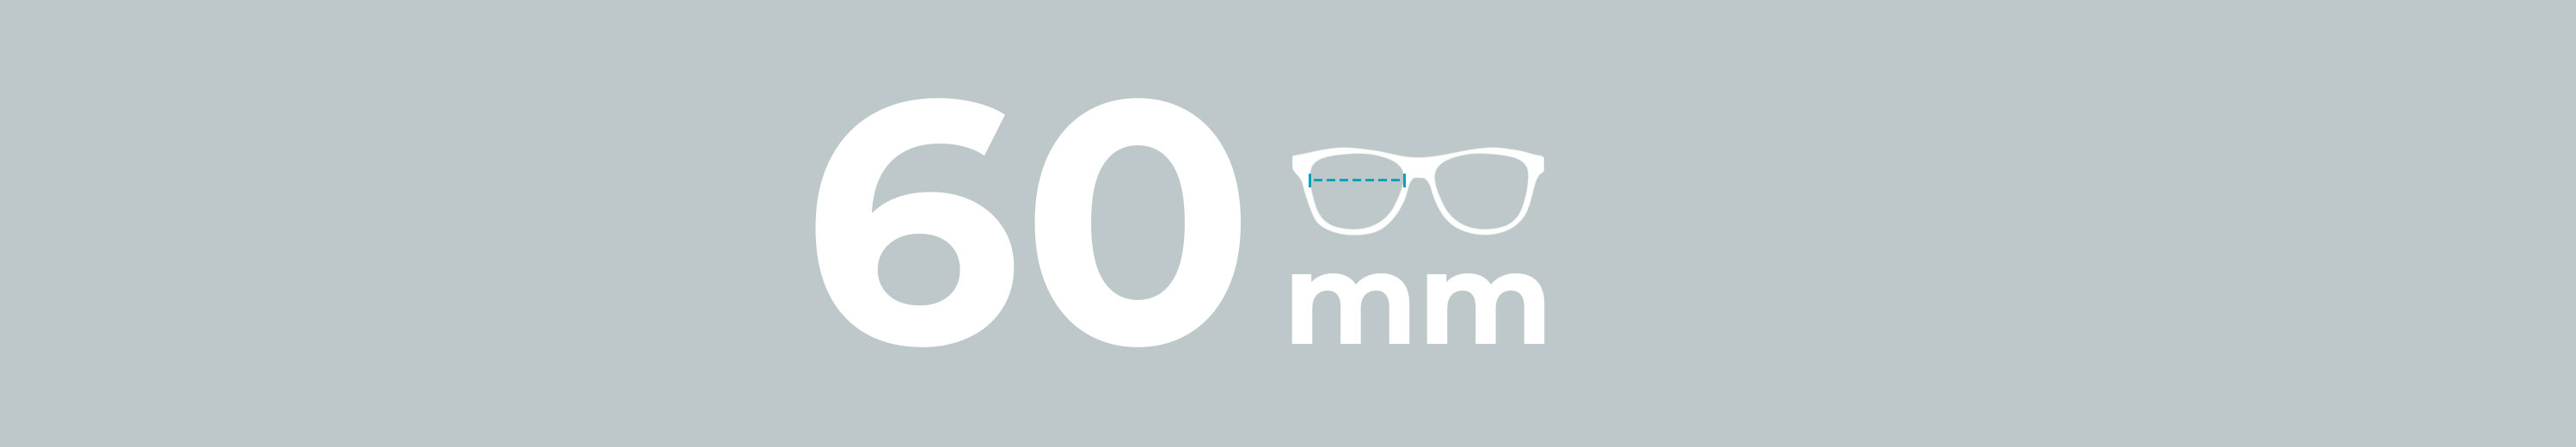 Eyeglasses 60mm Lens